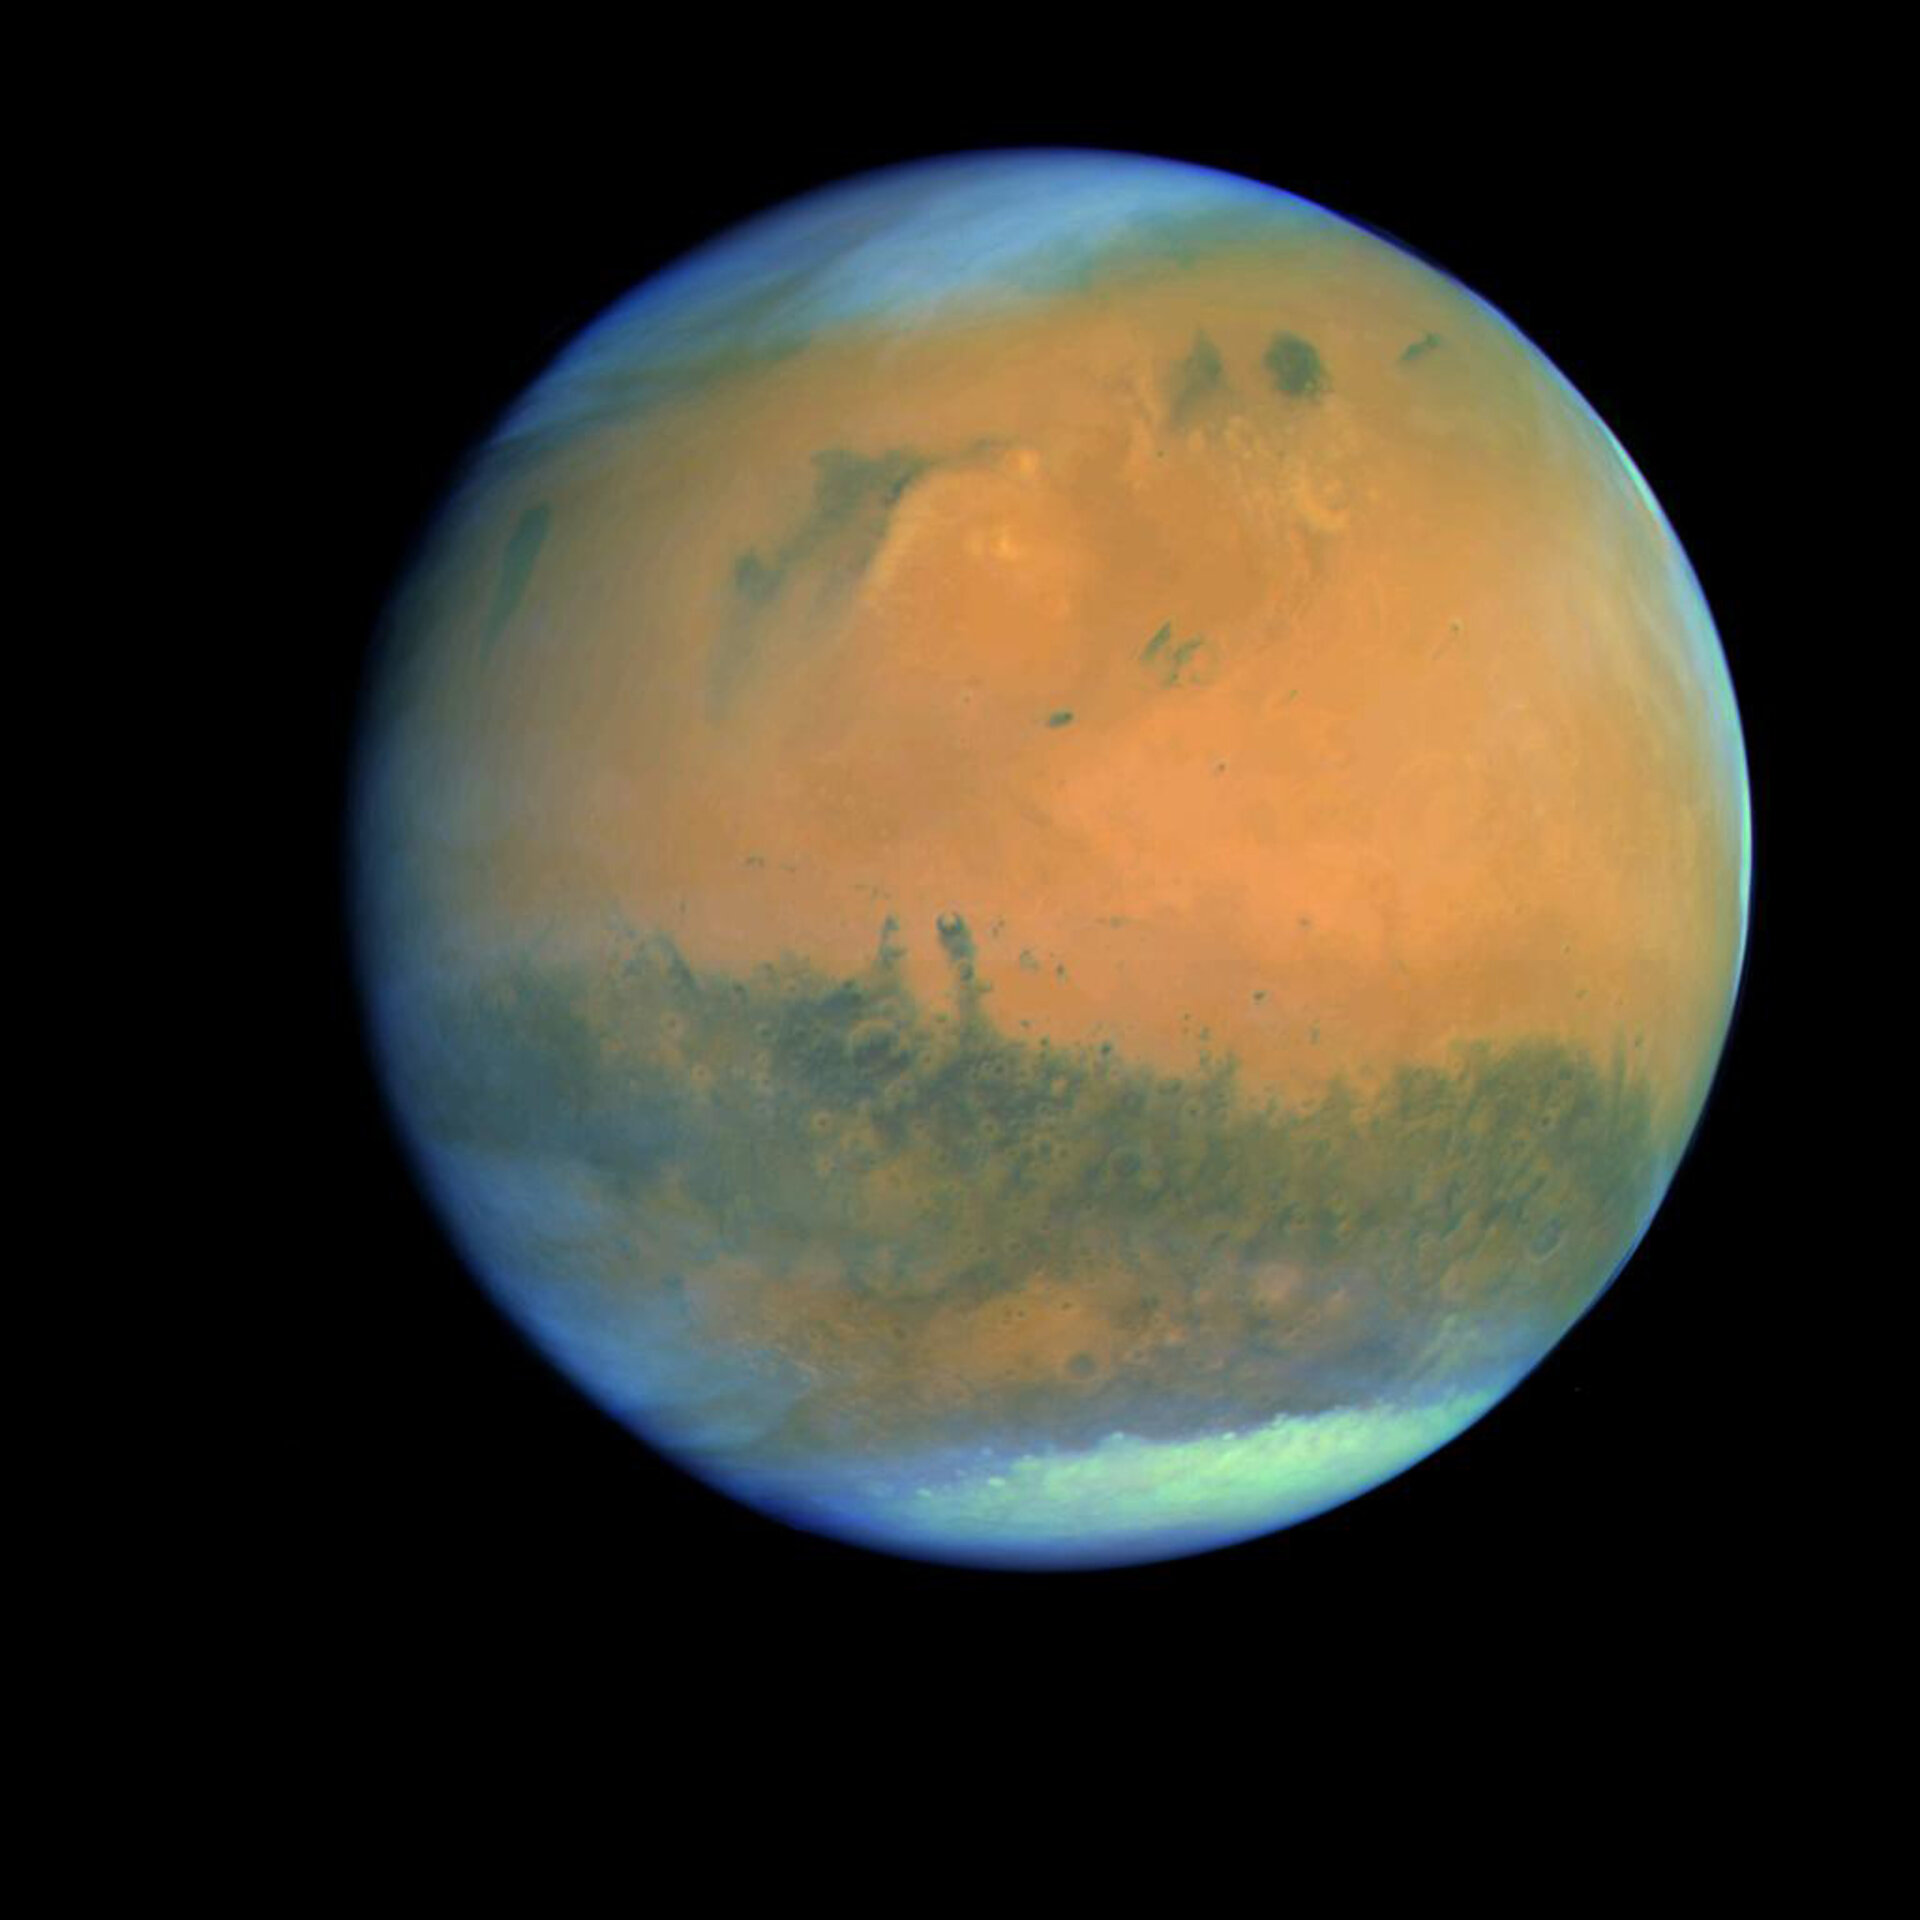 Mars seen from ESA's Rosetta spacecraft in 2007, en route to meet a comet in 2014